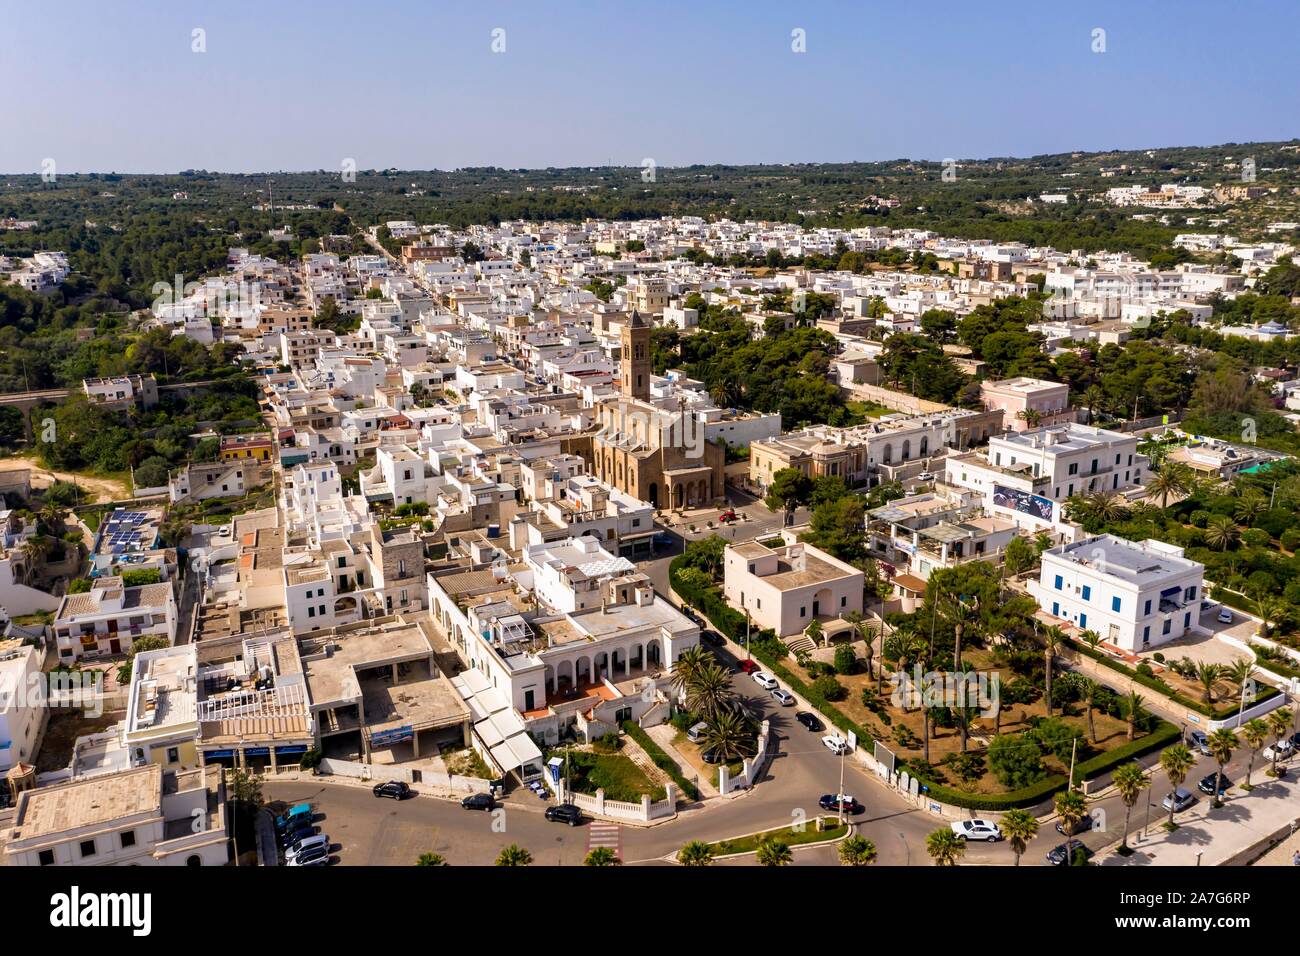 Aerial view, city view, Santa Maria di Leuca, province of Lecce, Salentische Peninsel, Apulia, Italy Stock Photo